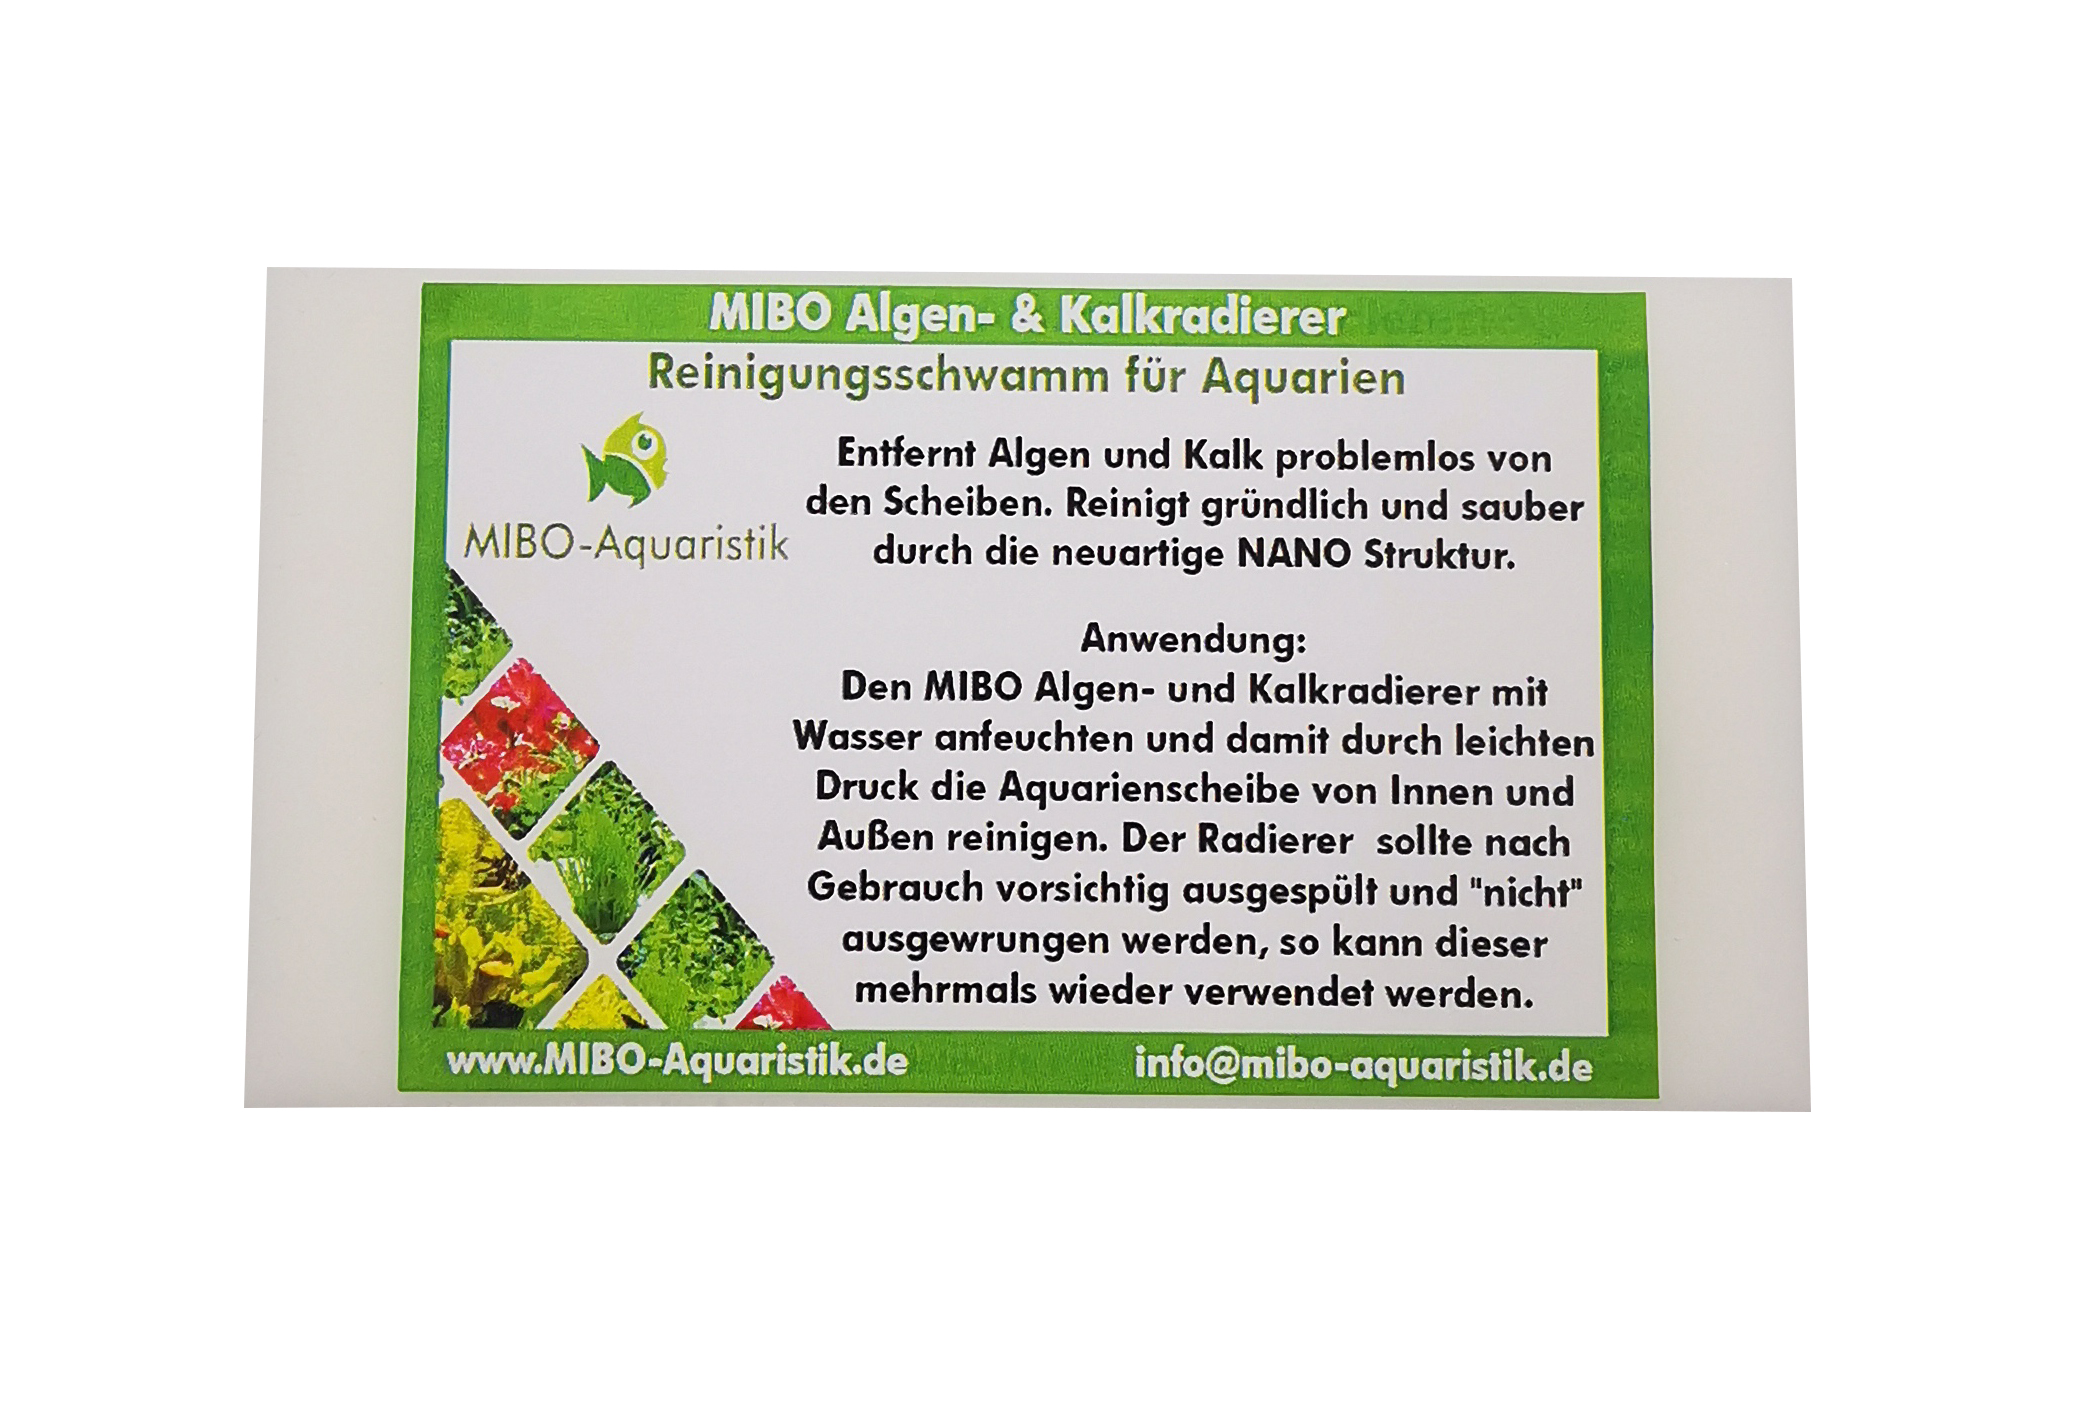 MIBO Algen- und Kalkradierer